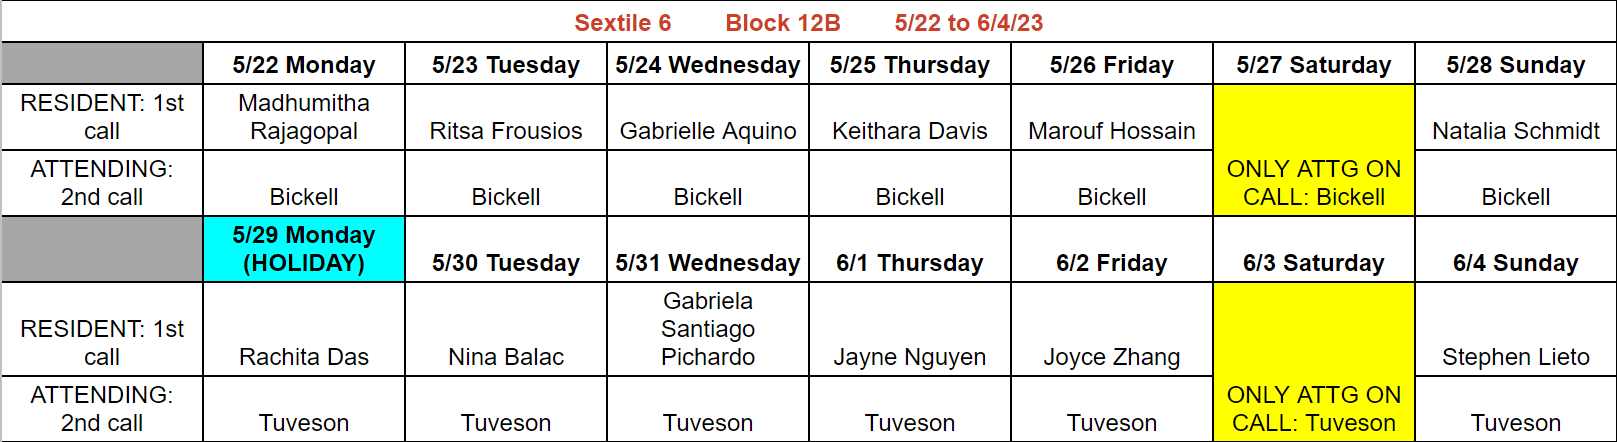 Block 12B - May 22 - June 4, 2023